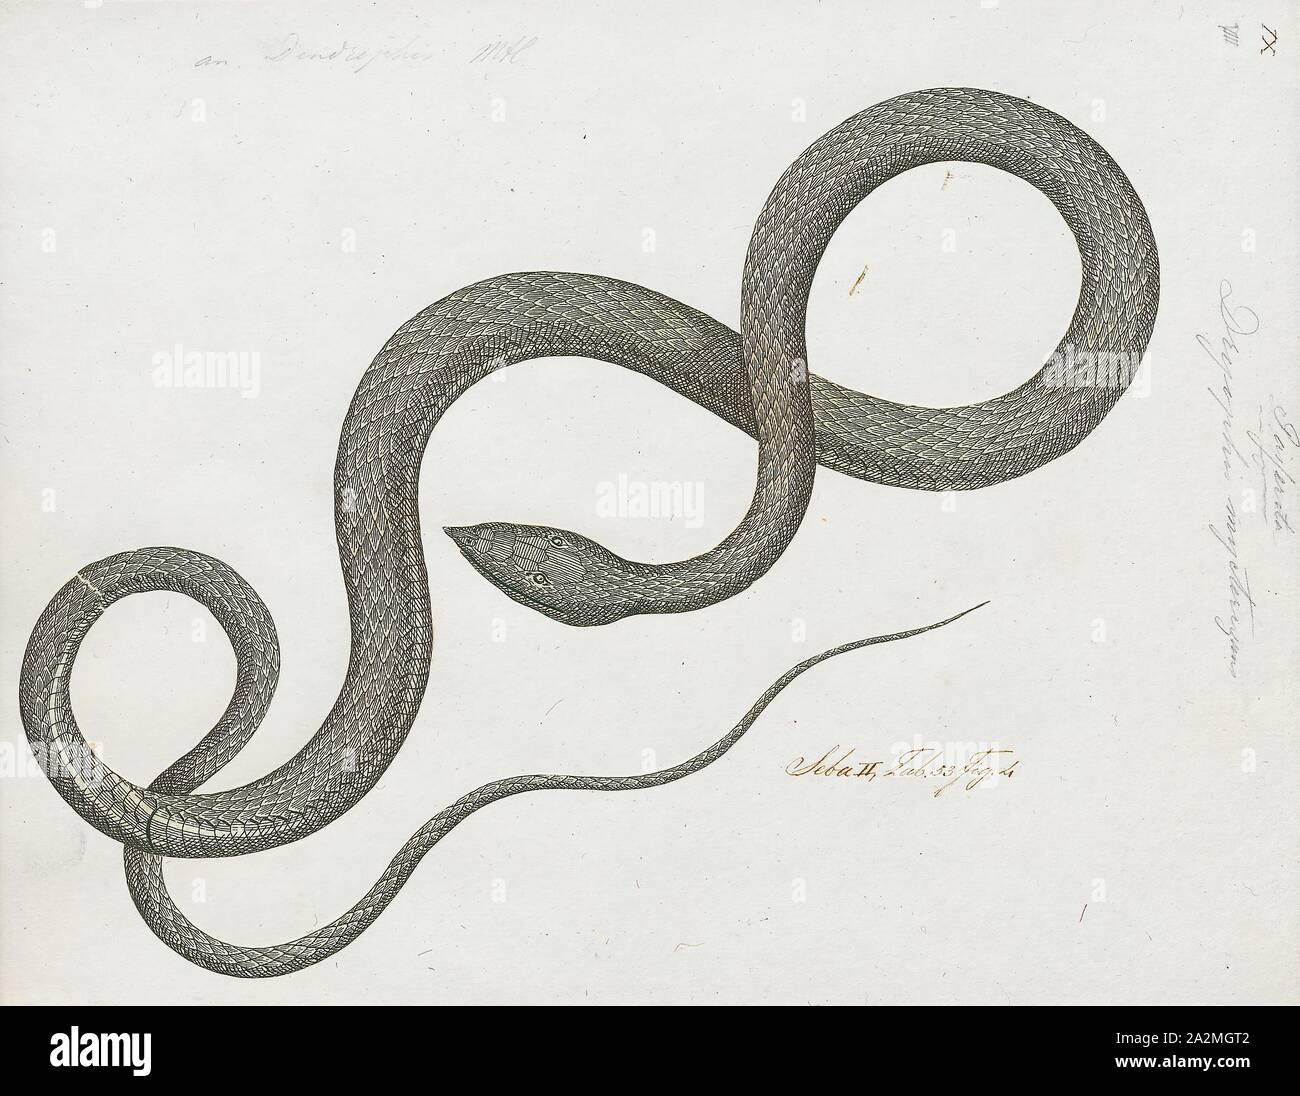 Dryophis Ahaetulla mycterizans, Imprimer, nasuta, également connu sous le nom de serpent de vigne communes et Whip bec long serpent, est un mince serpent vert trouvés en Inde, Sri Lanka, Bangladesh, Birmanie, Thaïlande, Cambodge et Vietnam, 1734-1765. Banque D'Images